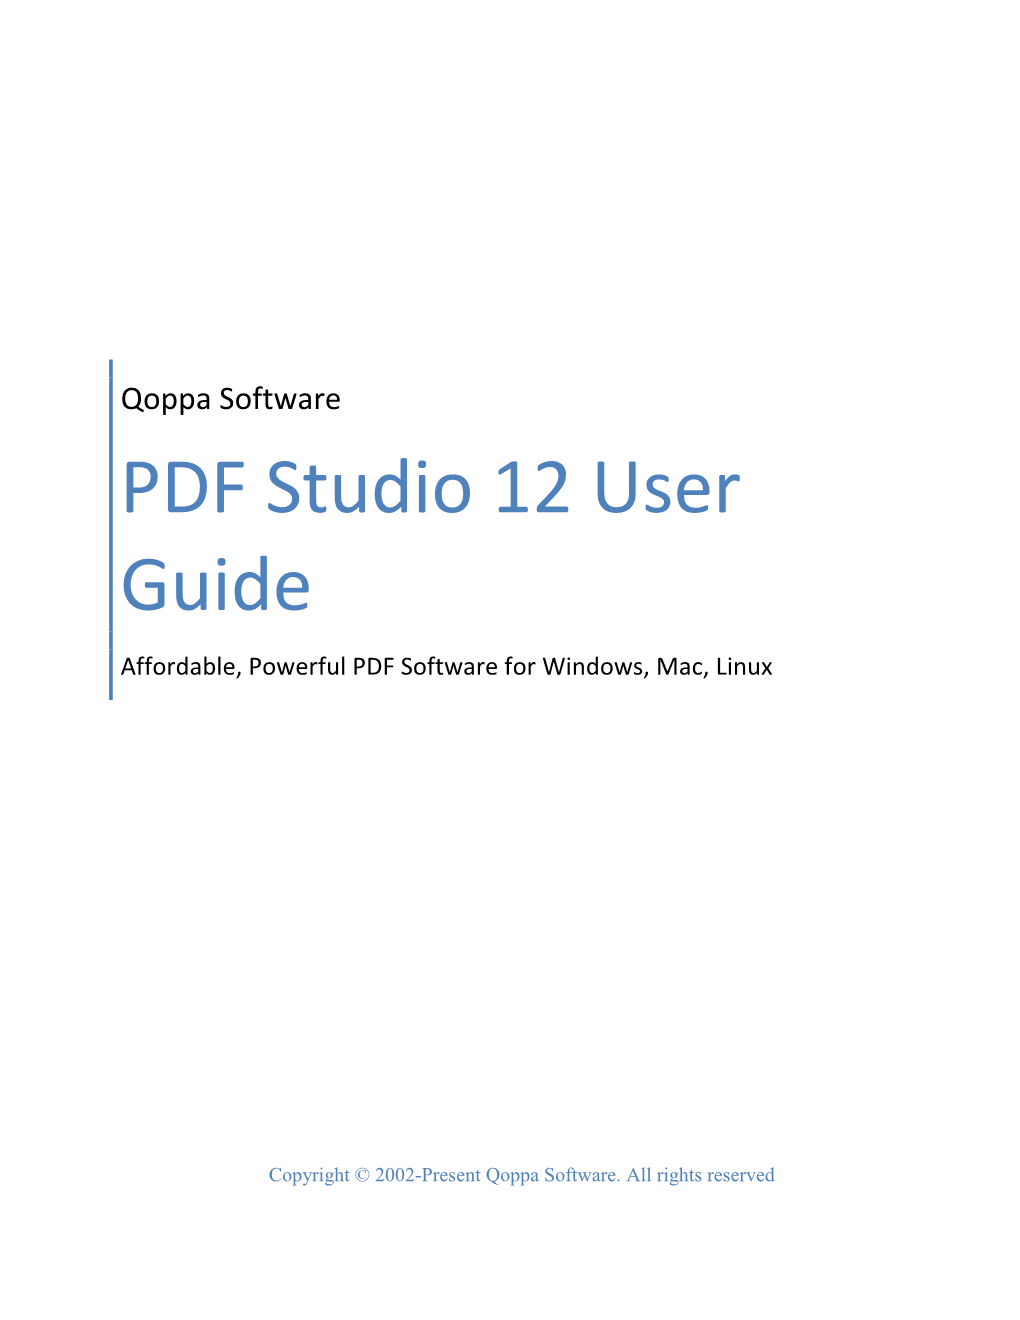 PDF Studio 12 User Guide